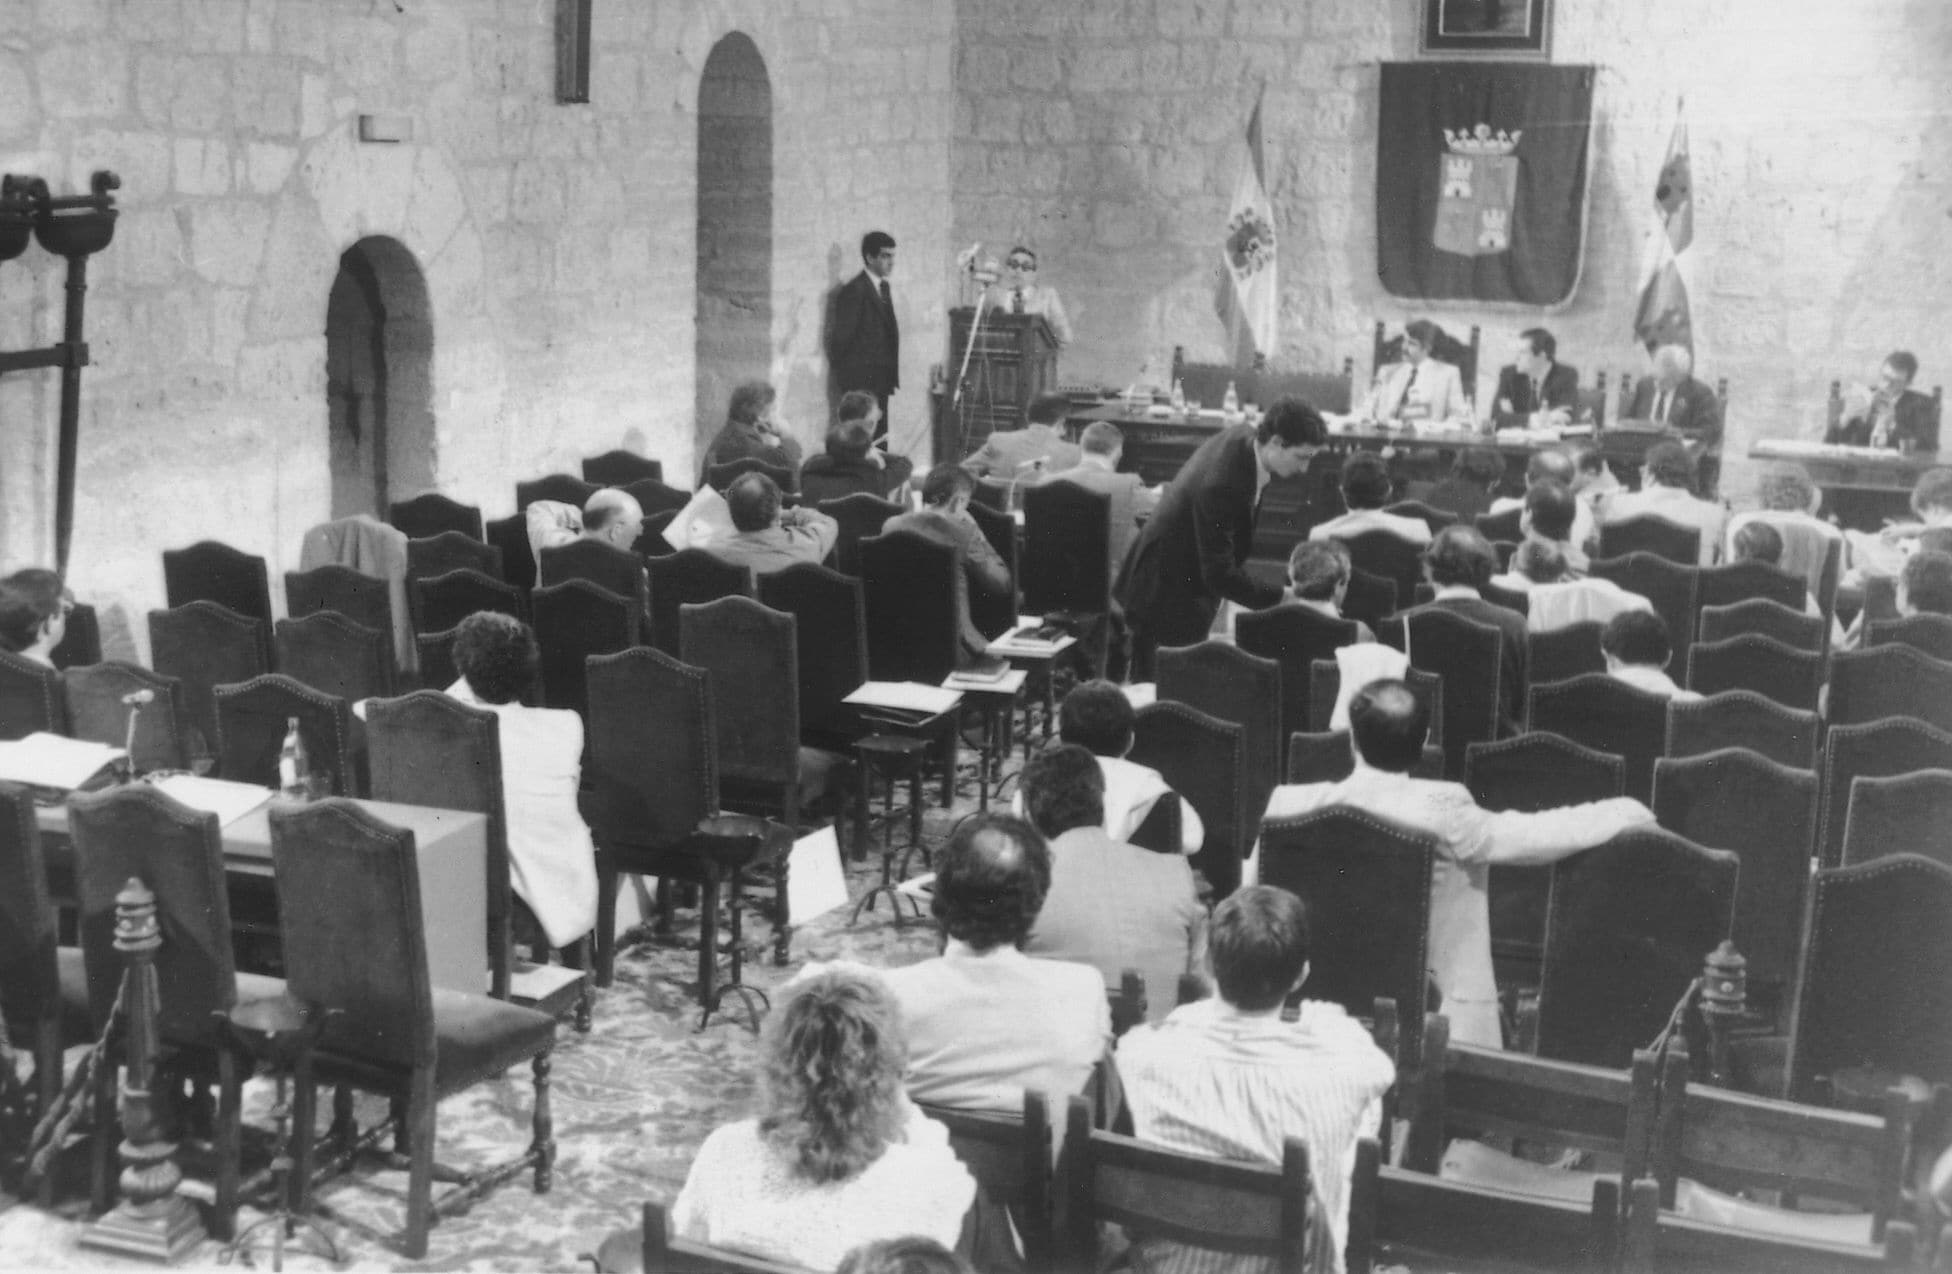 Bajo la presidencia de su titular, Dionisio Llamazares, el día 24 de julio de 1983, se reunieron por primera vez en la sede provisional del castillo de Fuensaldaña, las Cortes de Castilla y León.